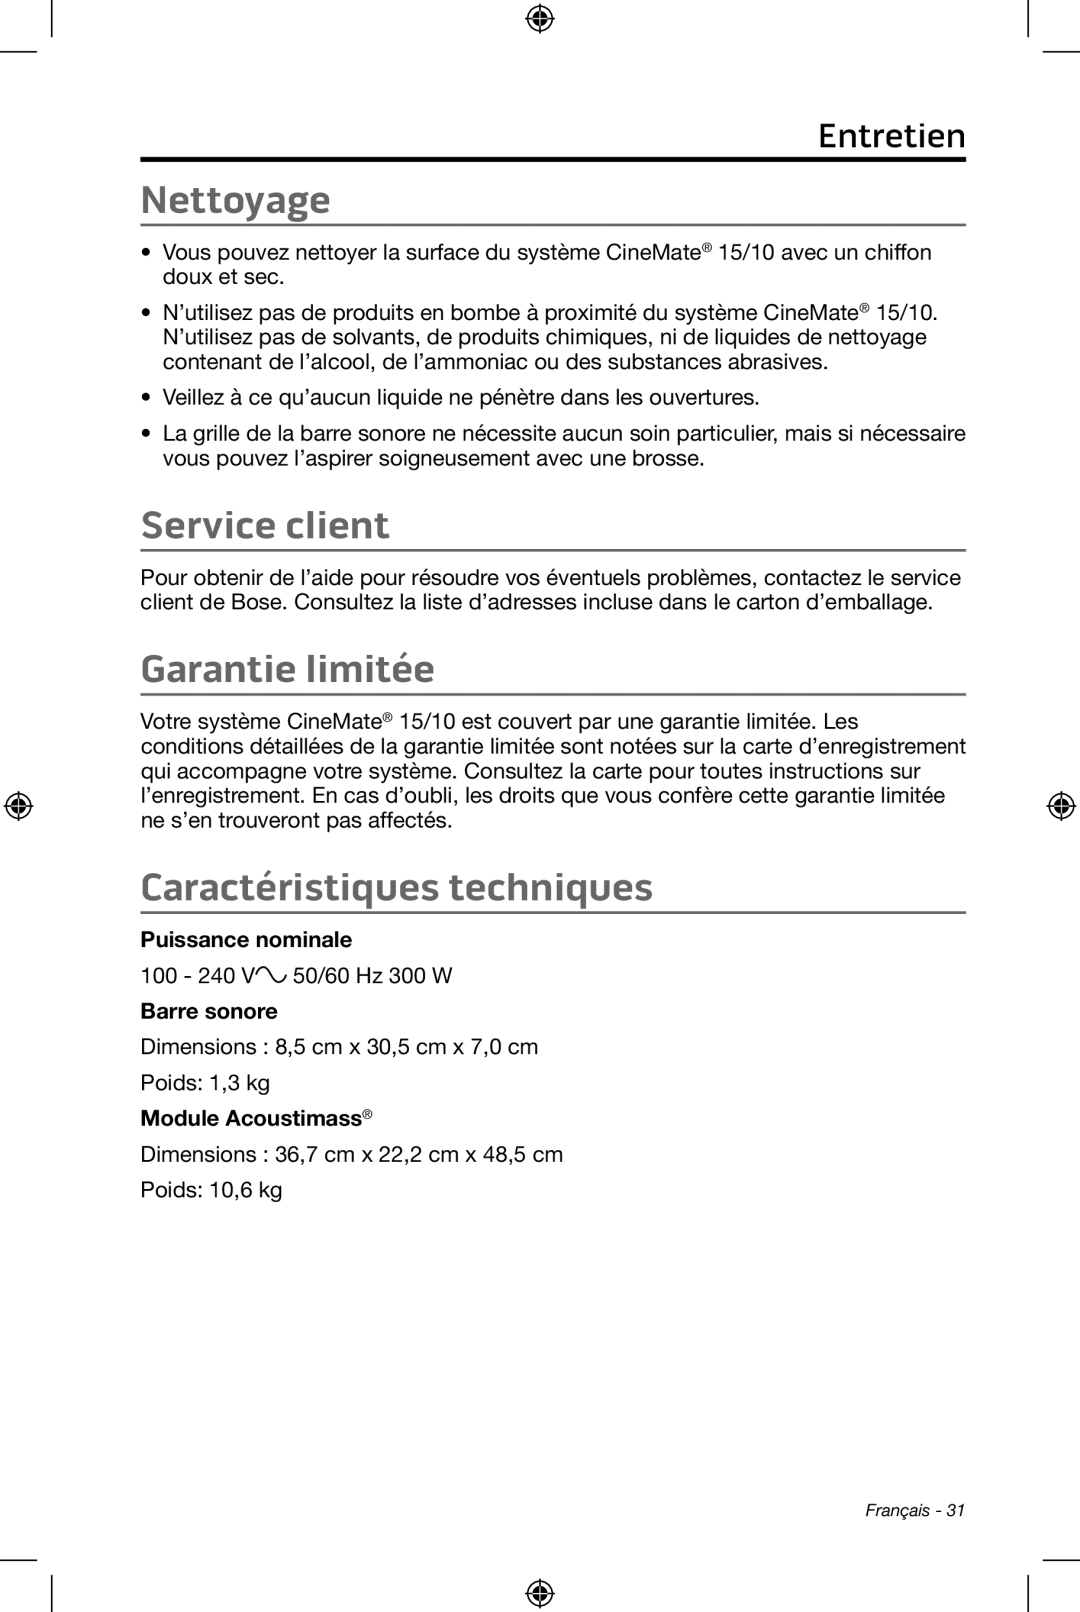 Bose CineMate 15/10 manual Nettoyage, Service client, Garantie limitée, Caractéristiques techniques, Entretien 